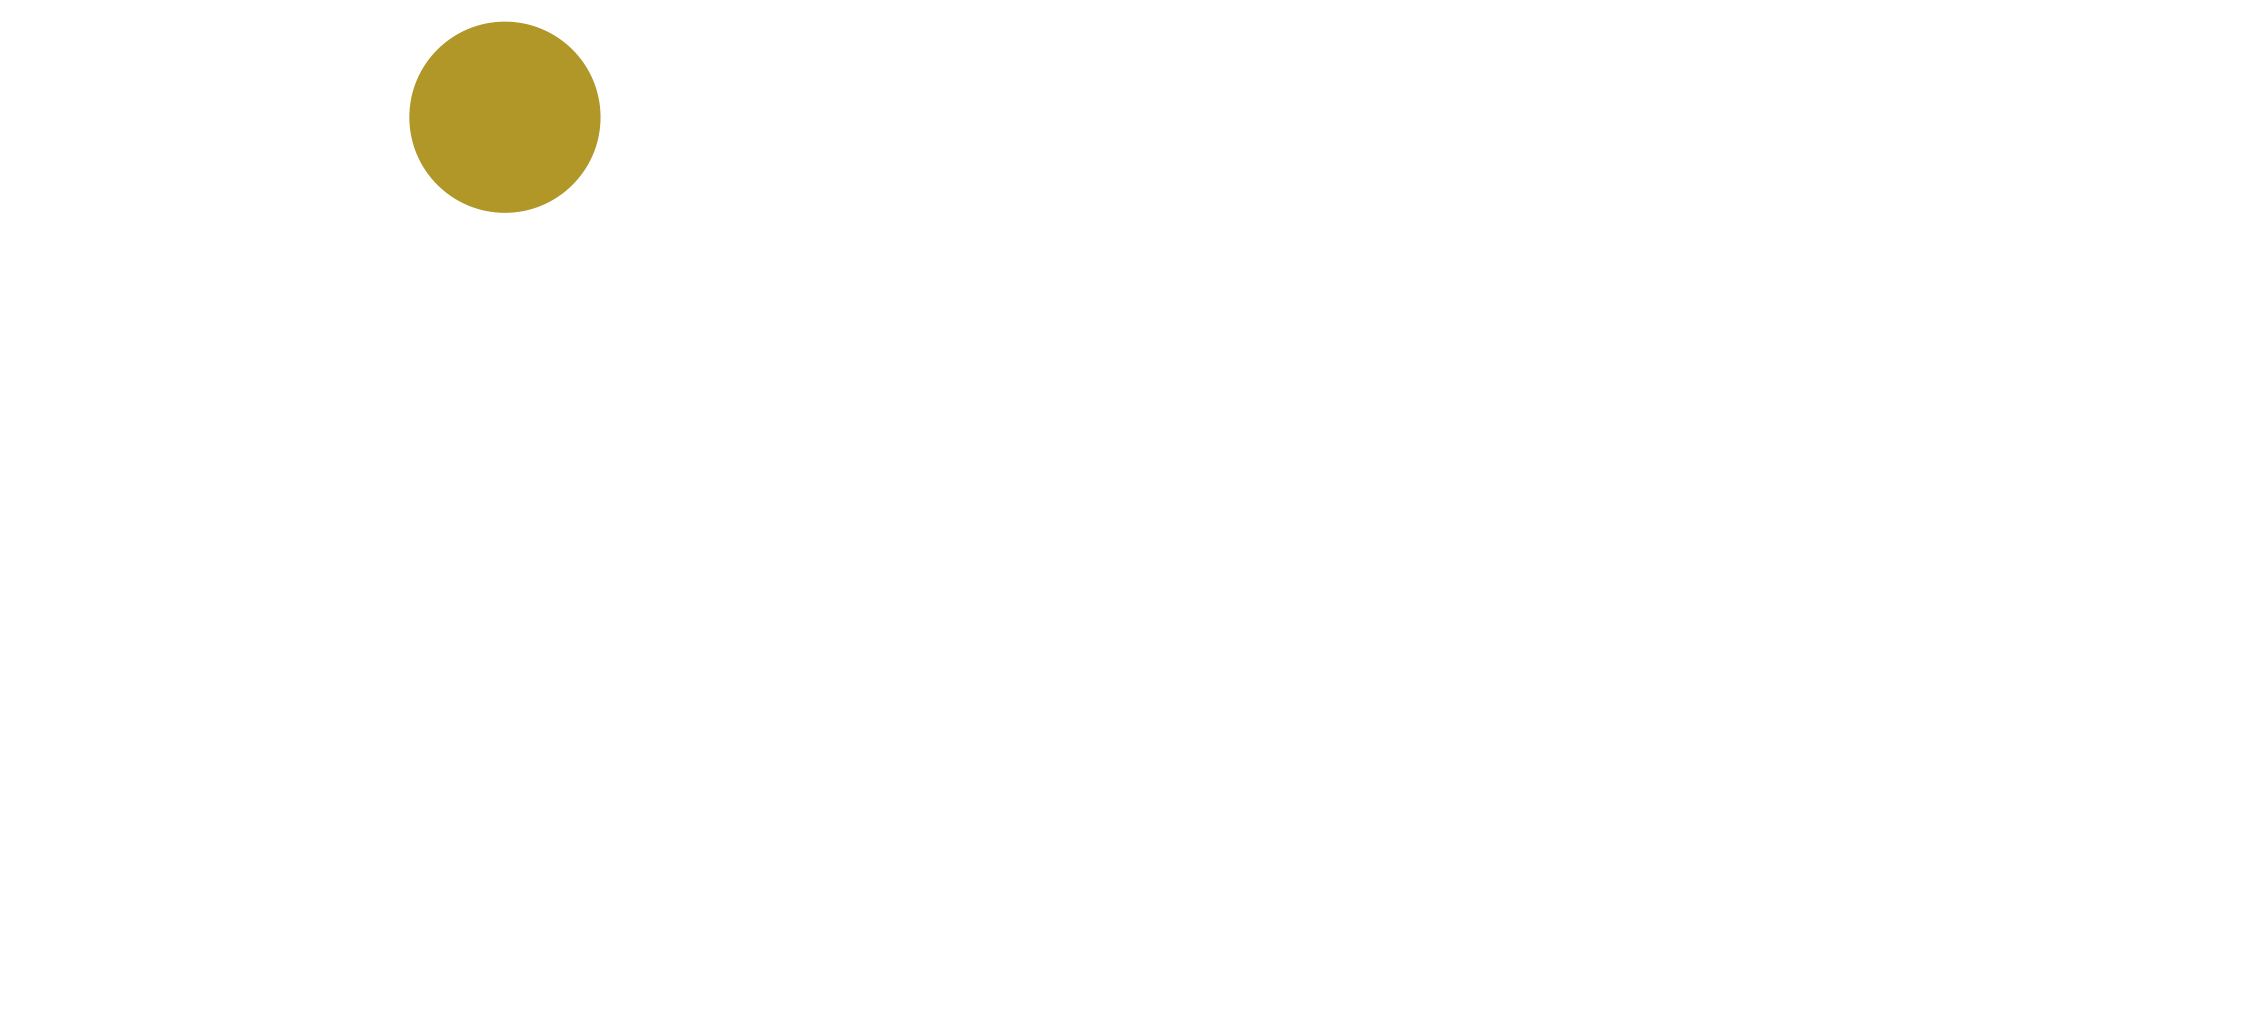 Magyar Pénzügyi Közvetítő Zrt.